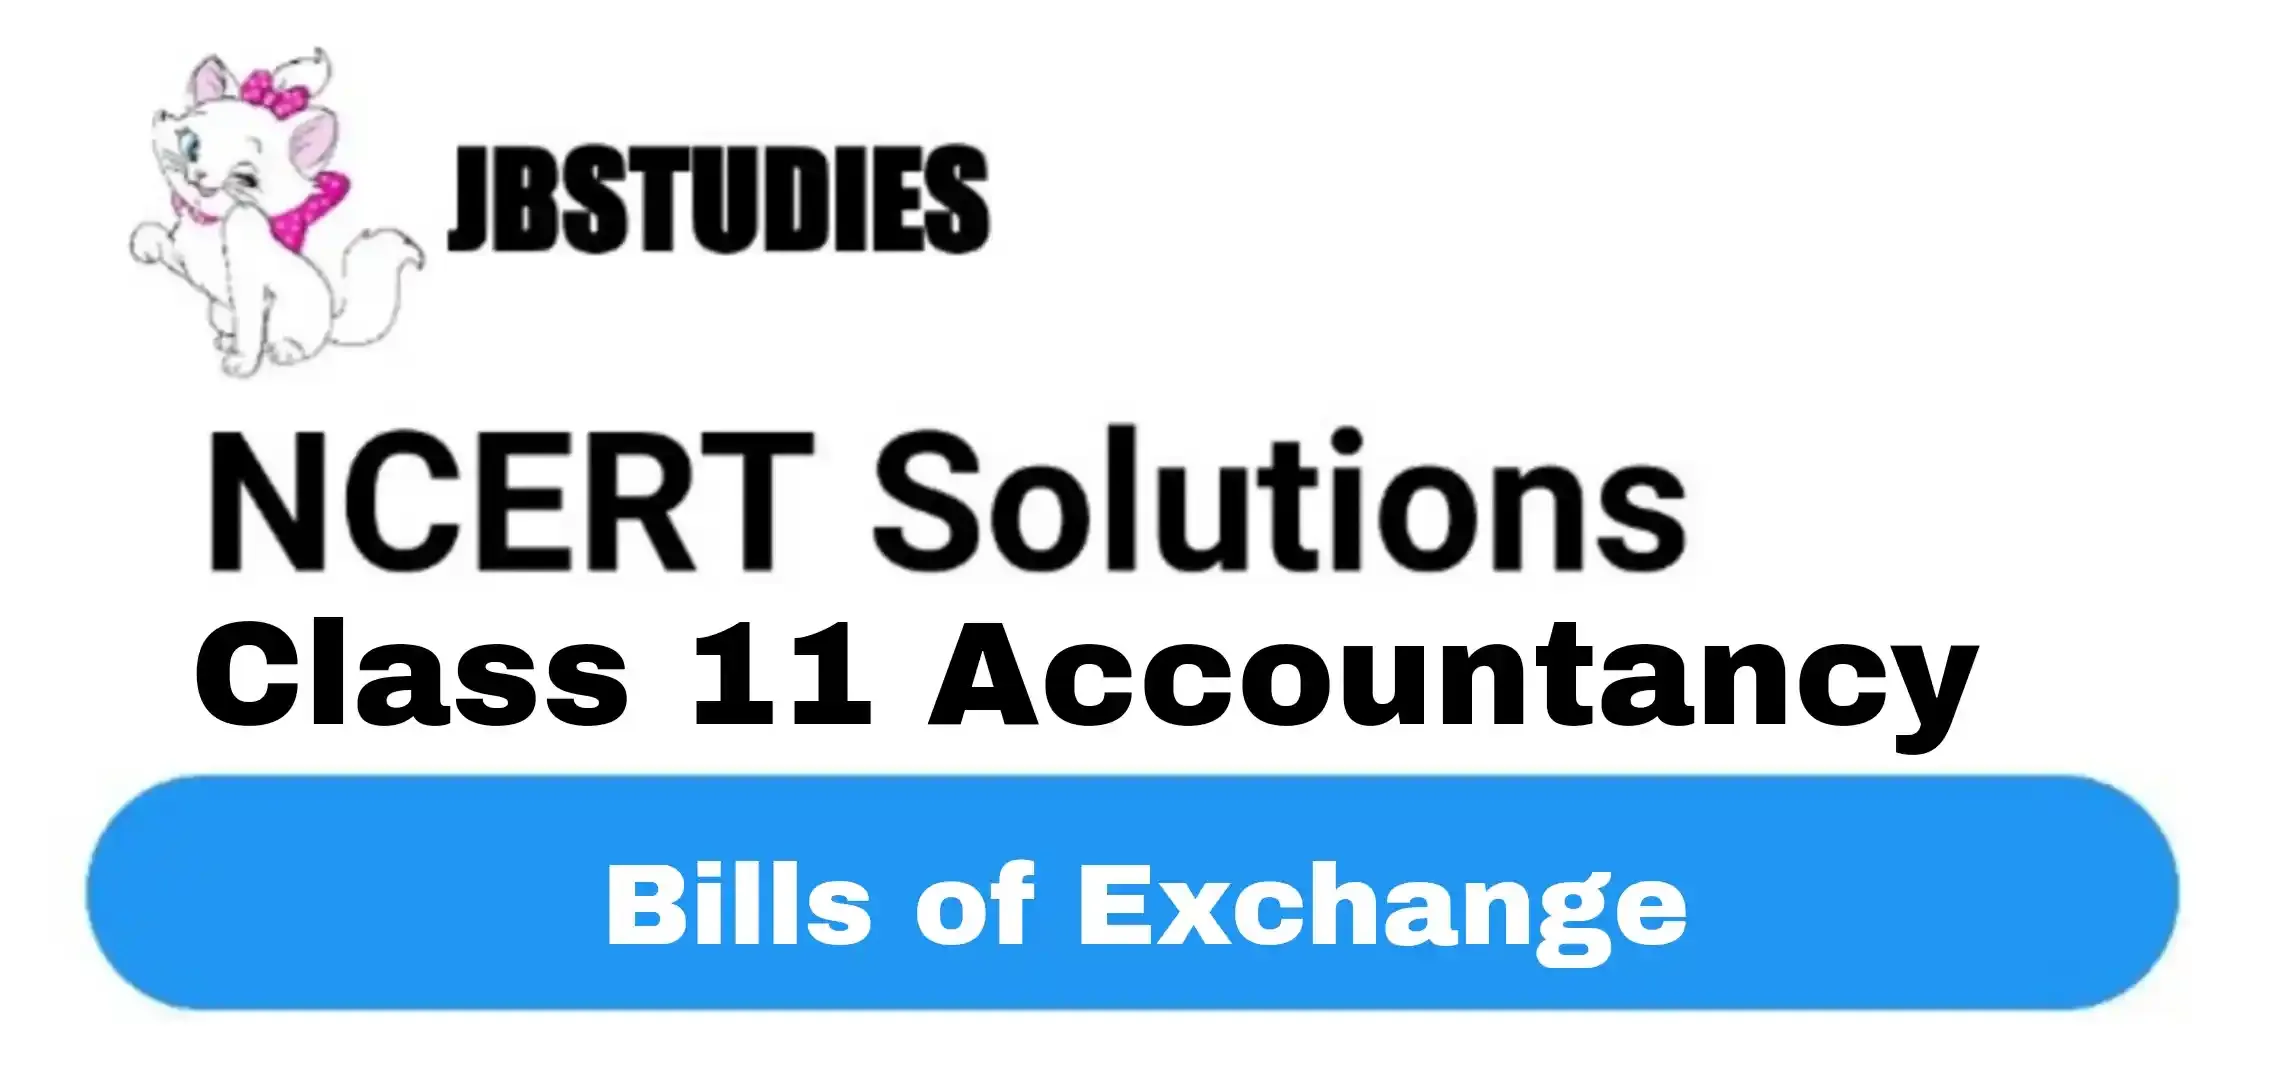 Solutions Class 11 Accountancy Chapter -8 (Bills of Exchange)